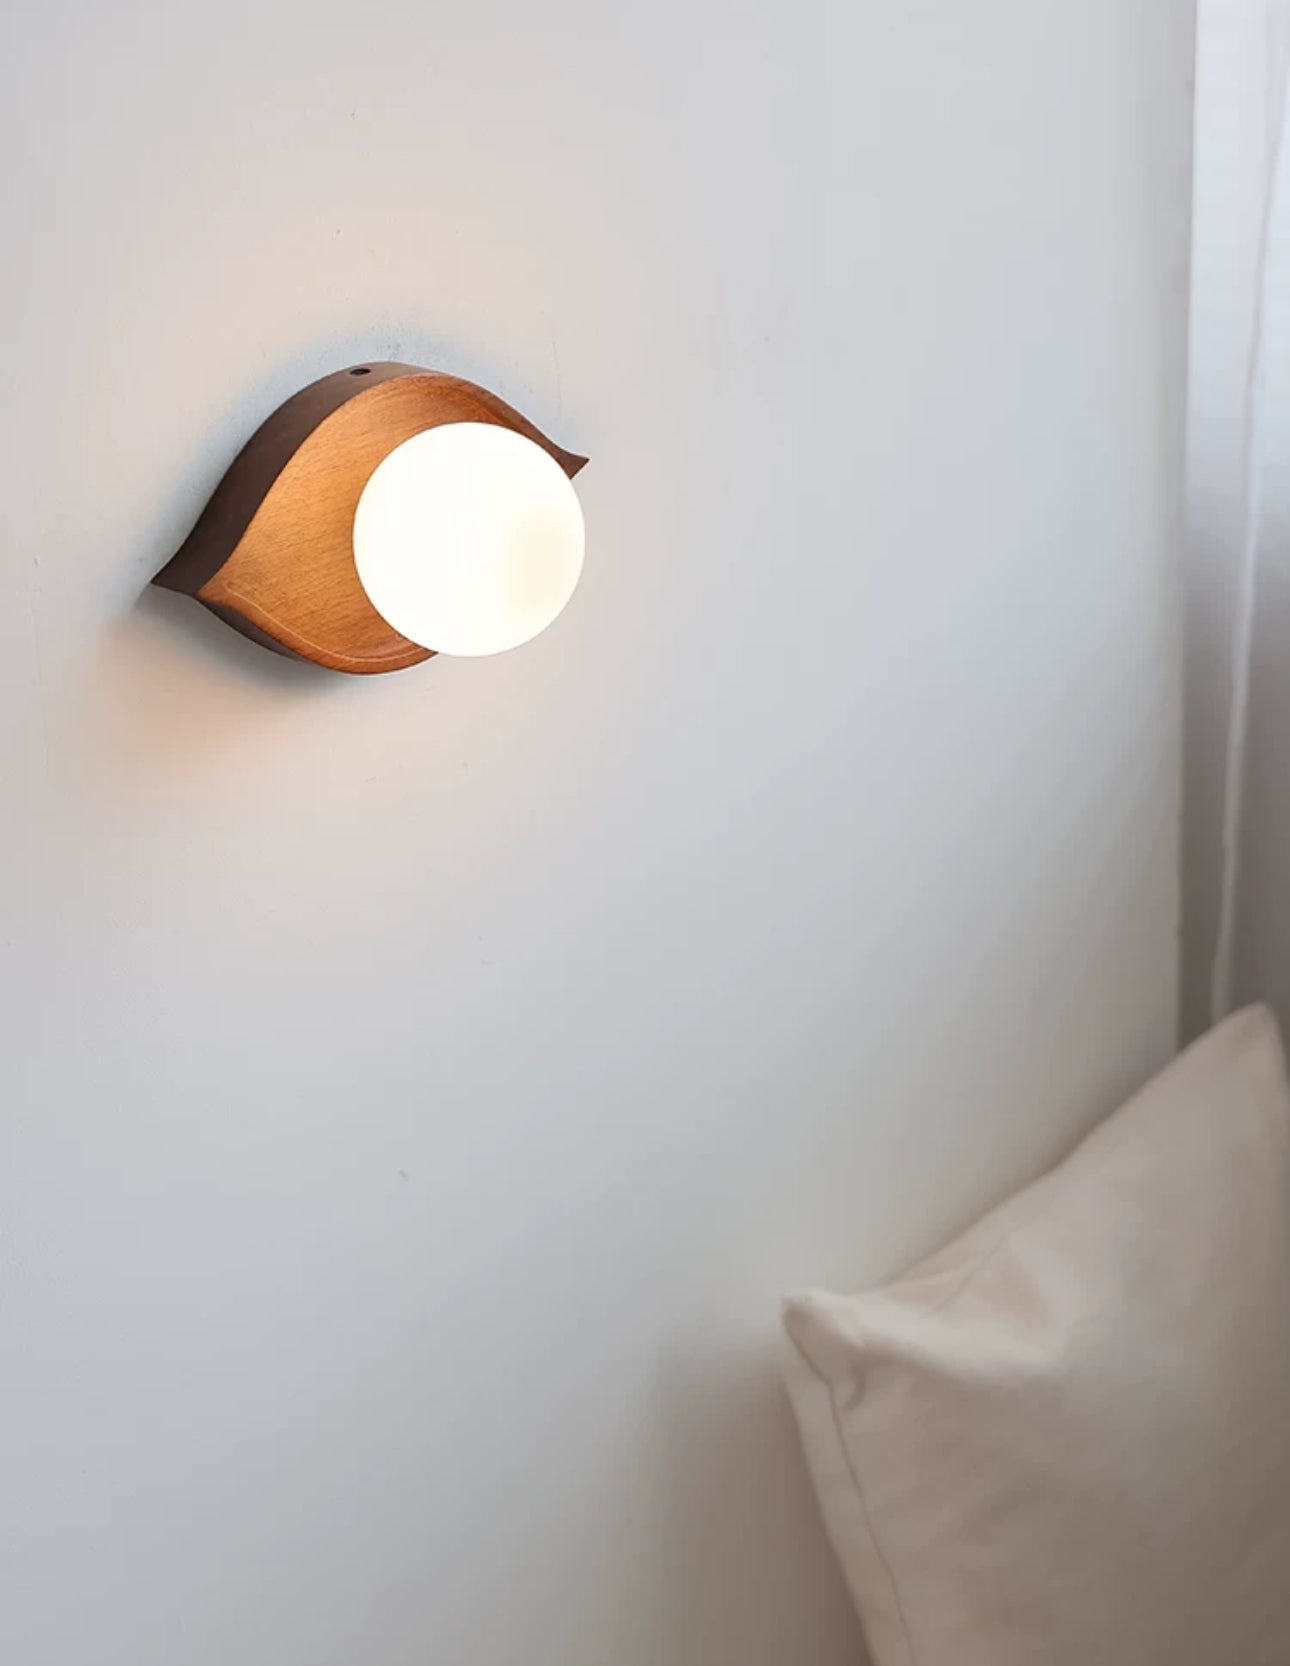 Japandi Design Walnut Wood 15x8cm Warm Led Lighting Elegant - Minimalist Wall Lamps